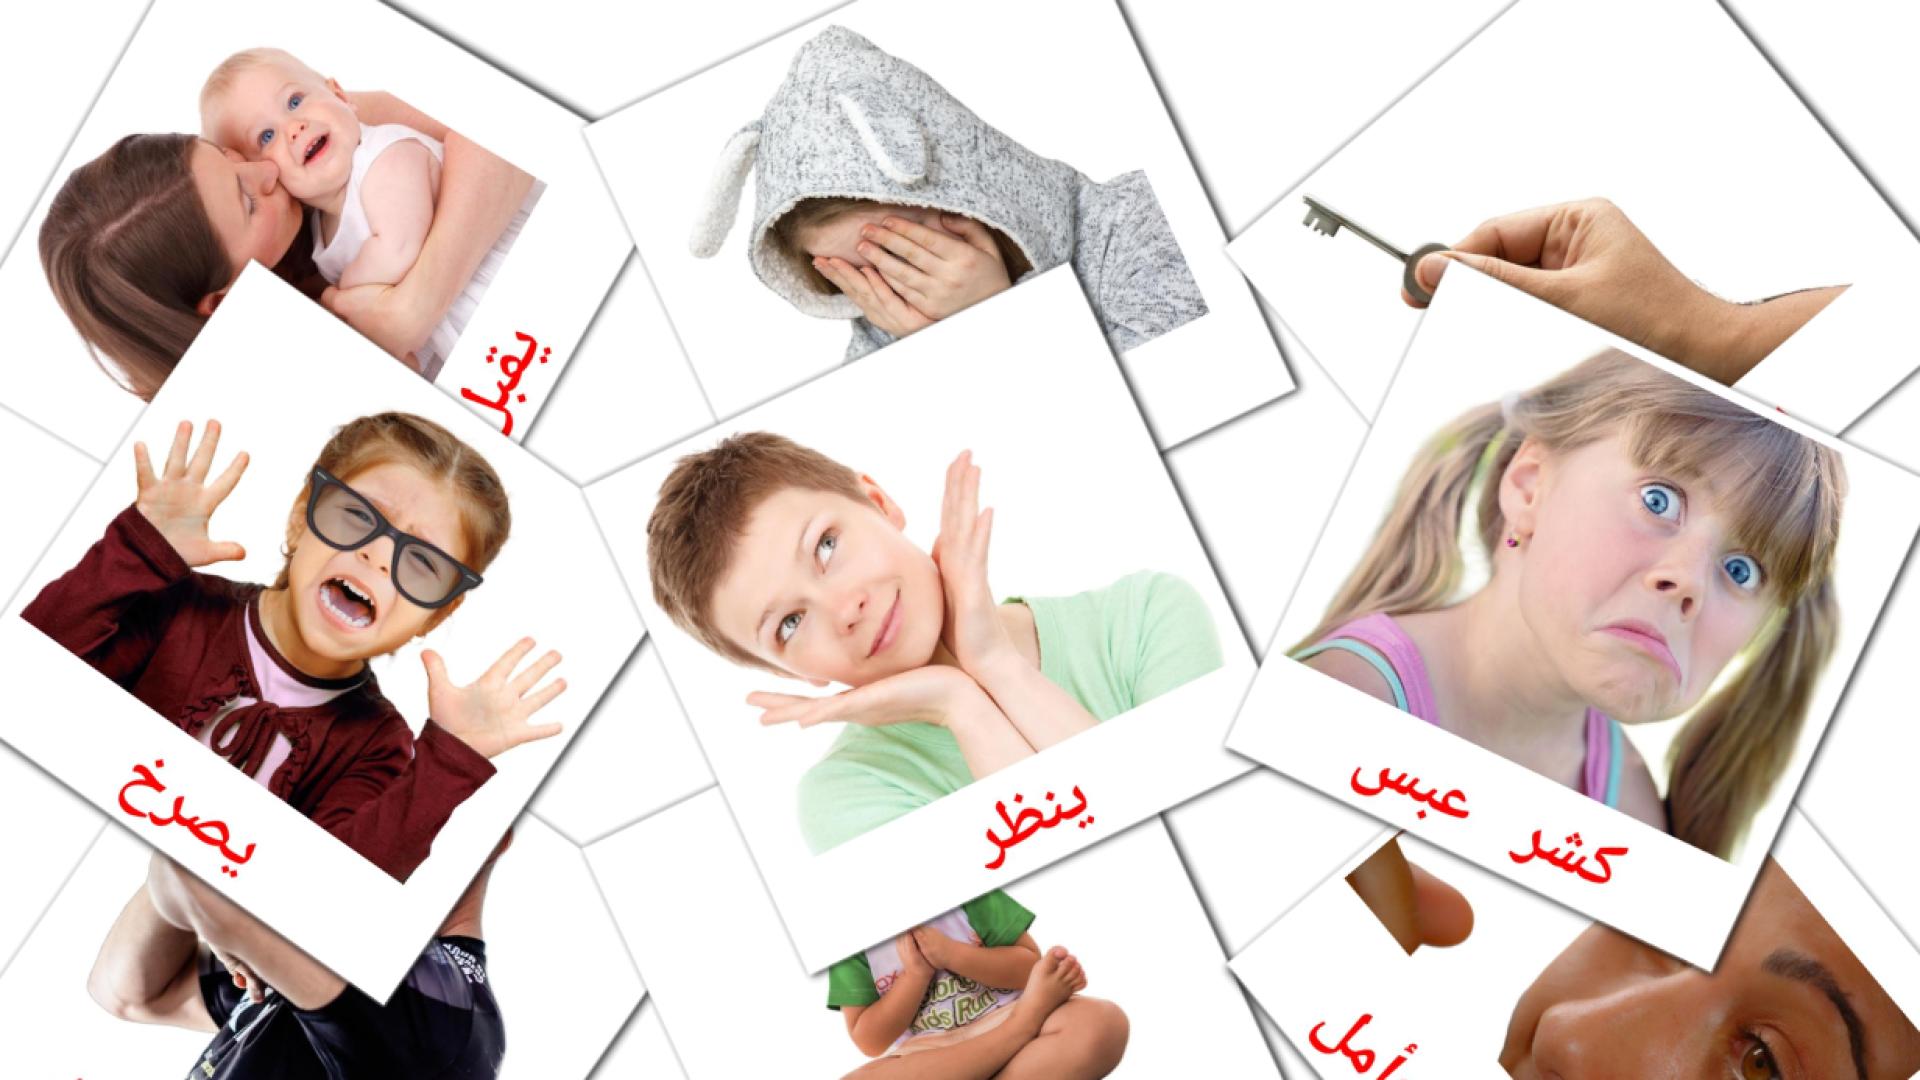 Staat werkwoorden - arabische woordenschatkaarten